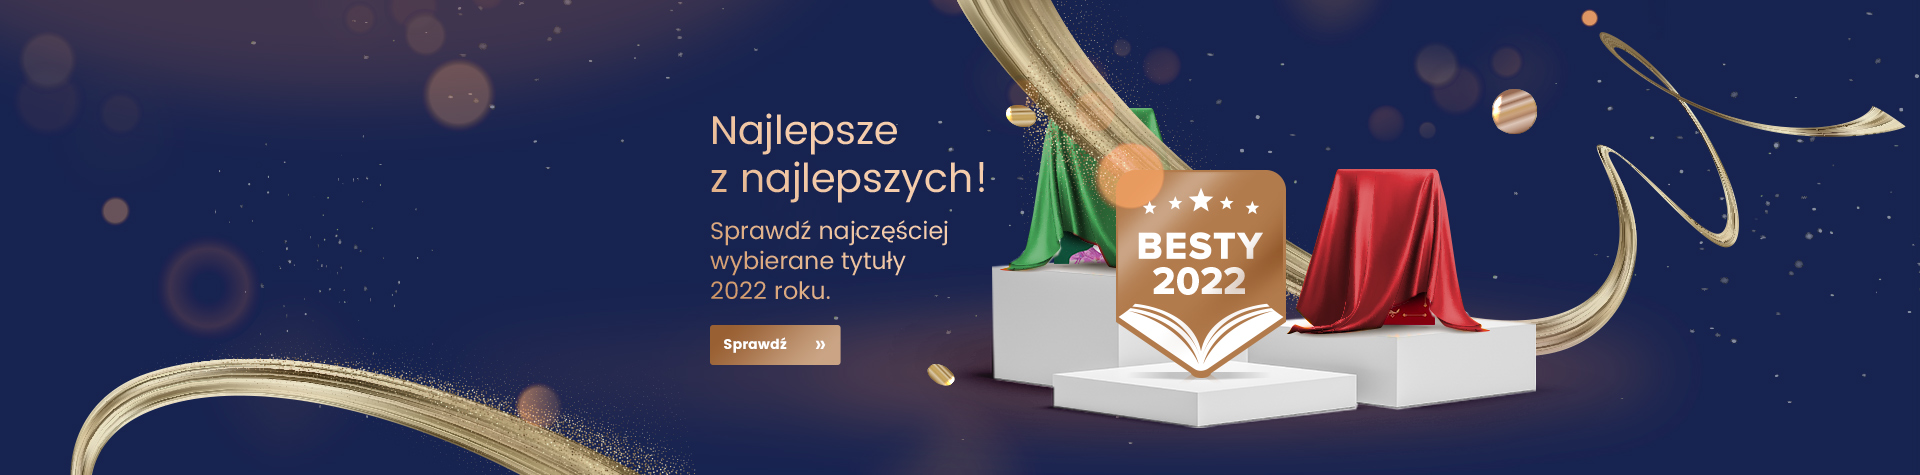 besty-2022